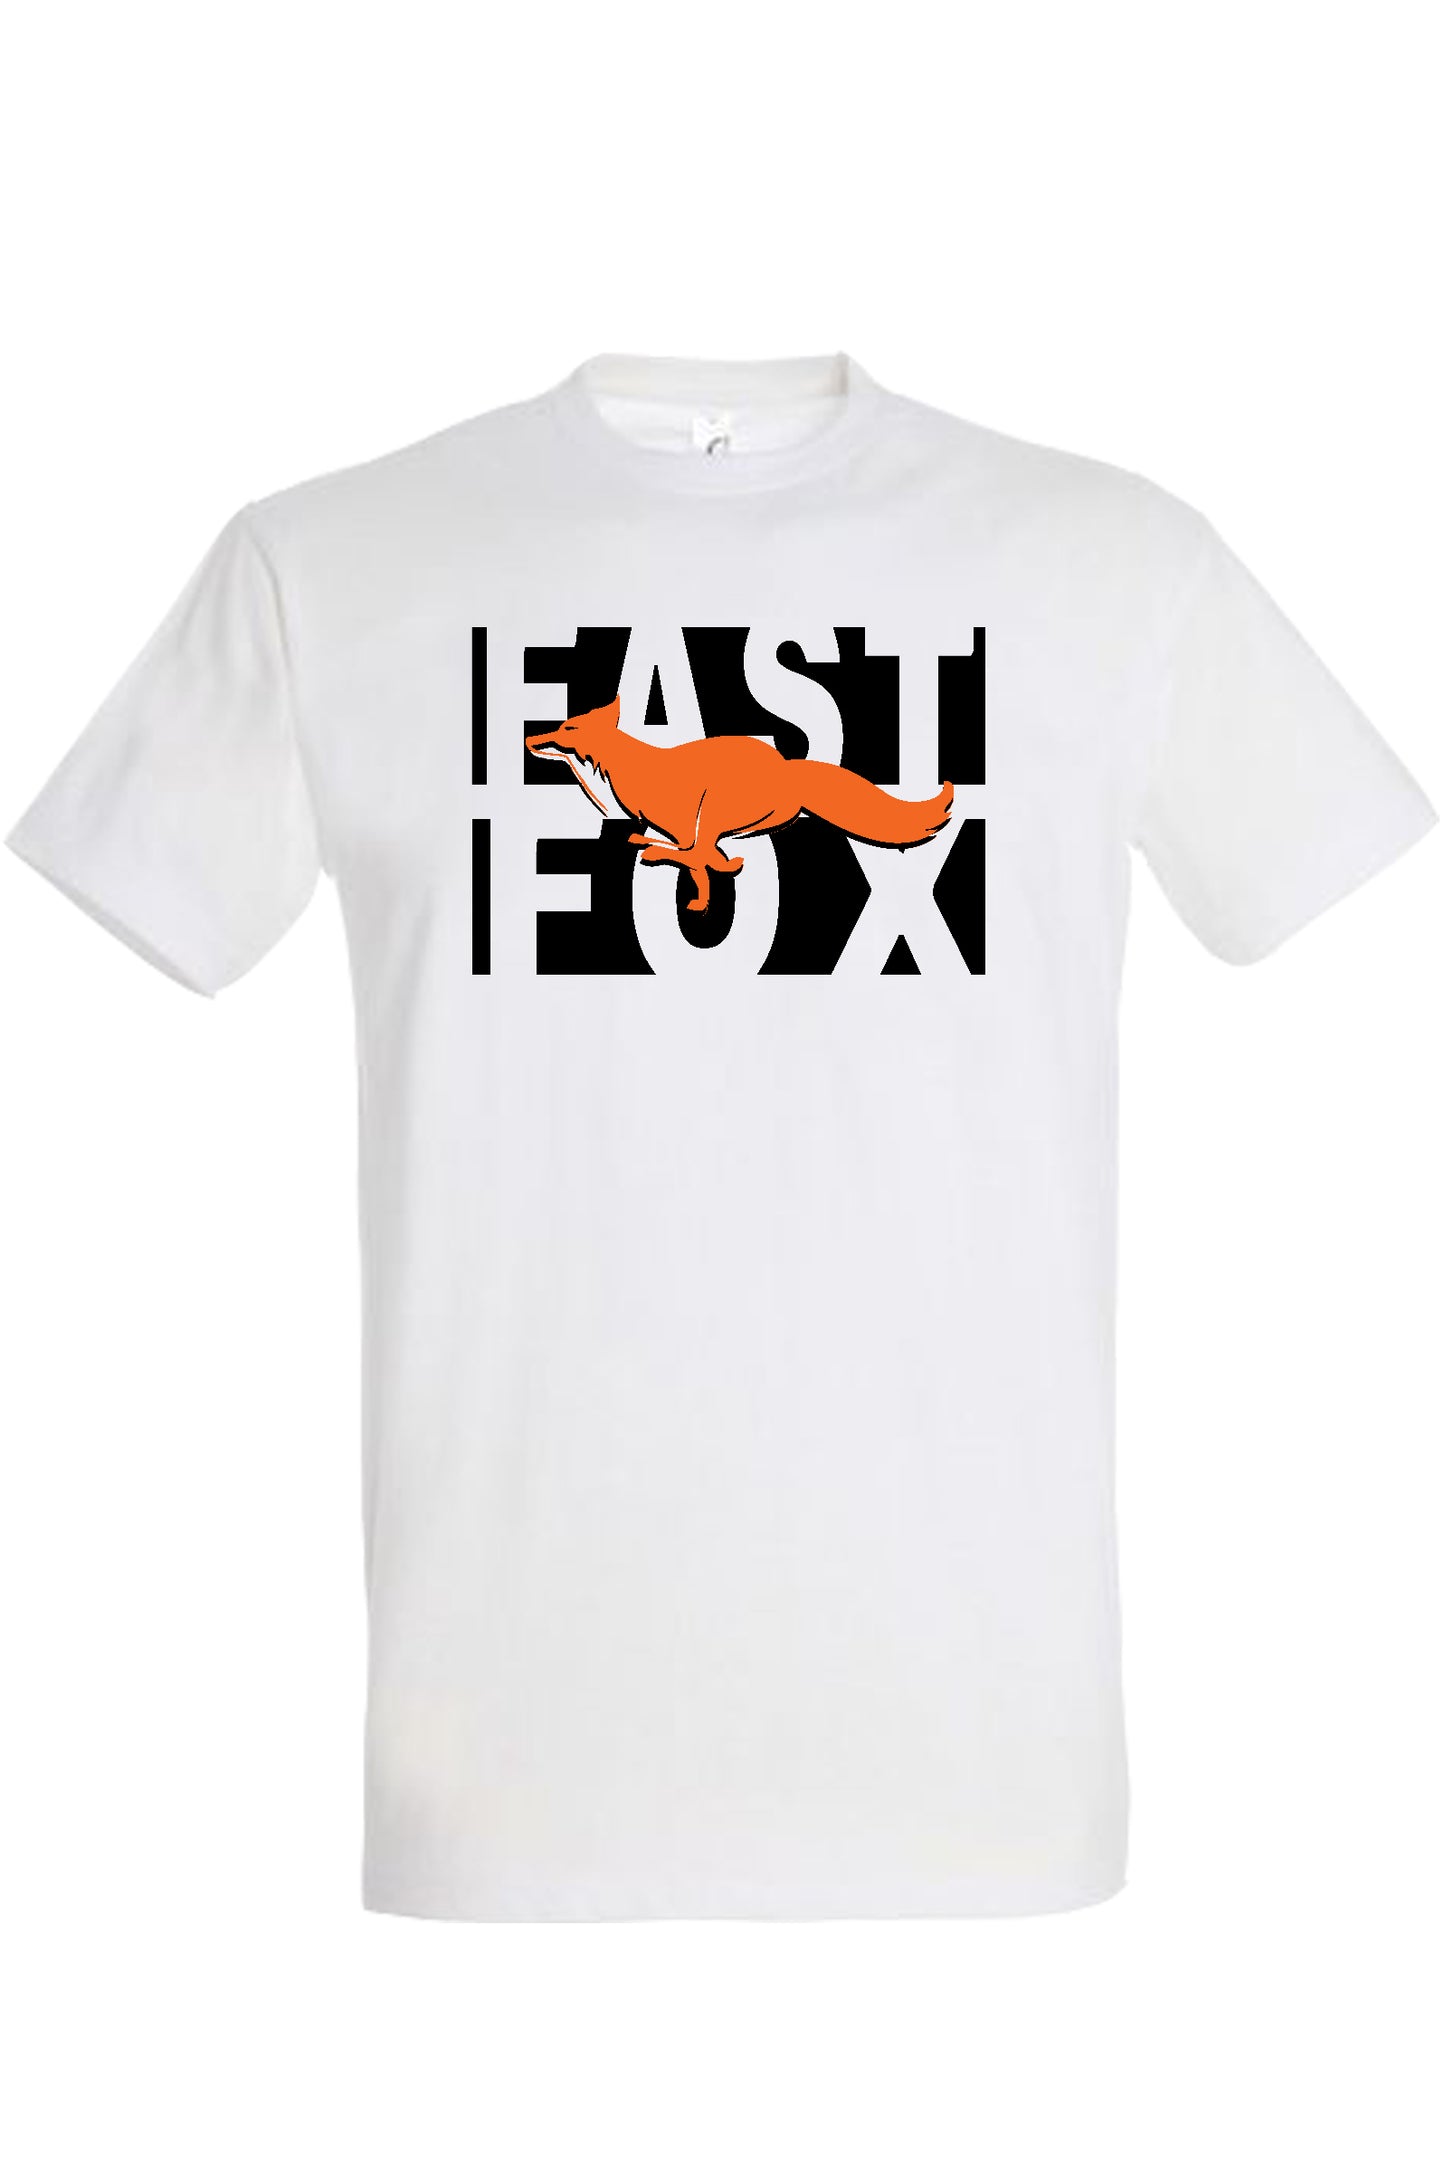 FAST FOX FÉRFI PÓLÓ 2